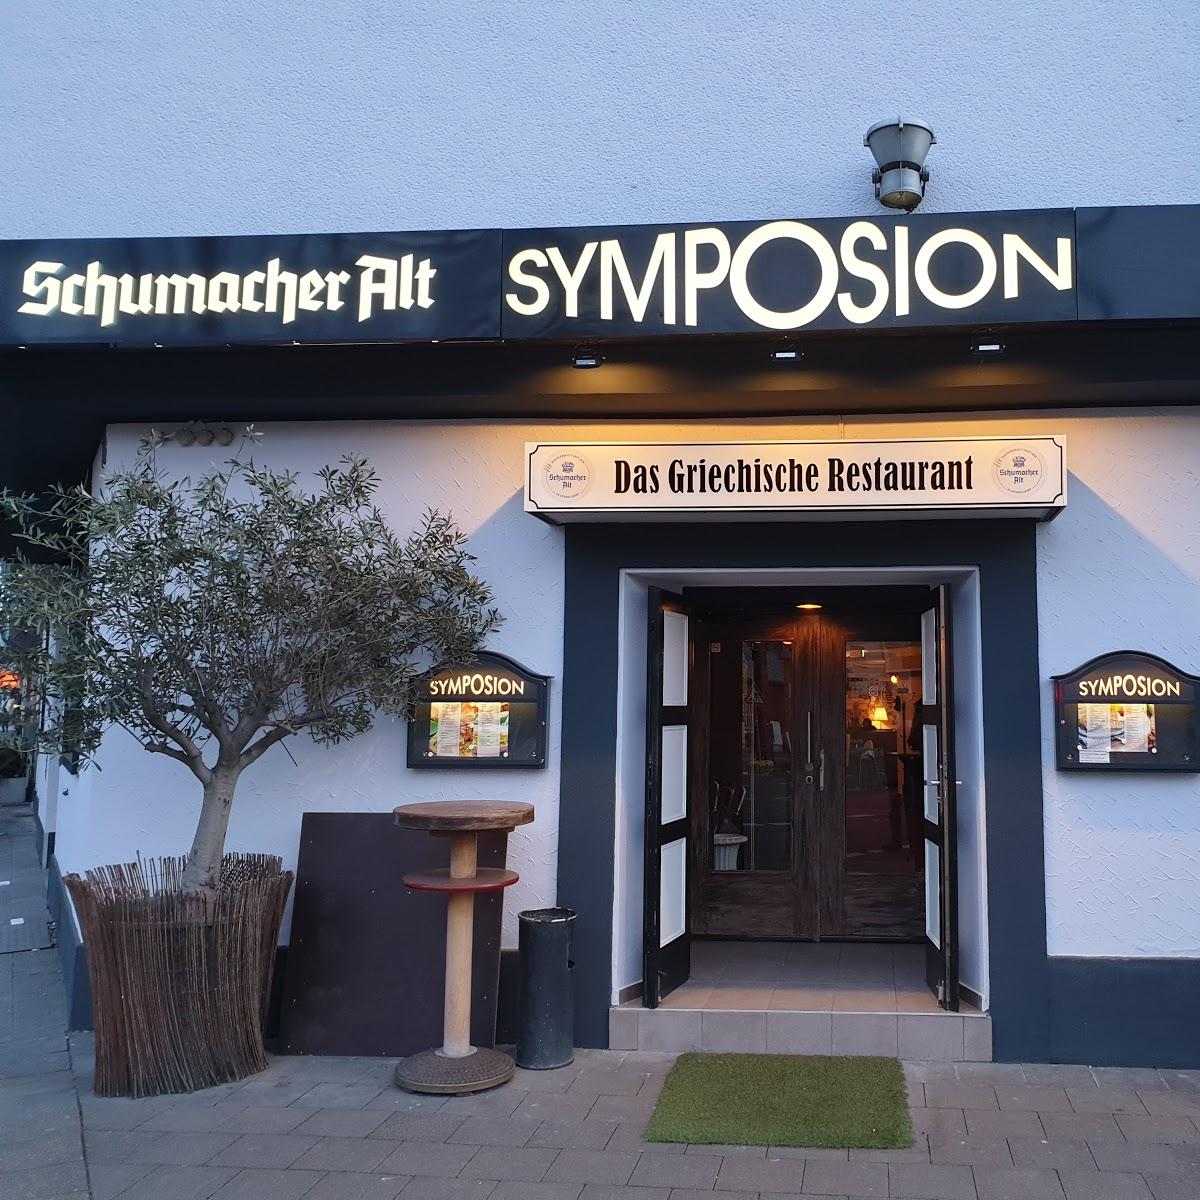 Restaurant "Restaurant Symposion" in  Düsseldorf